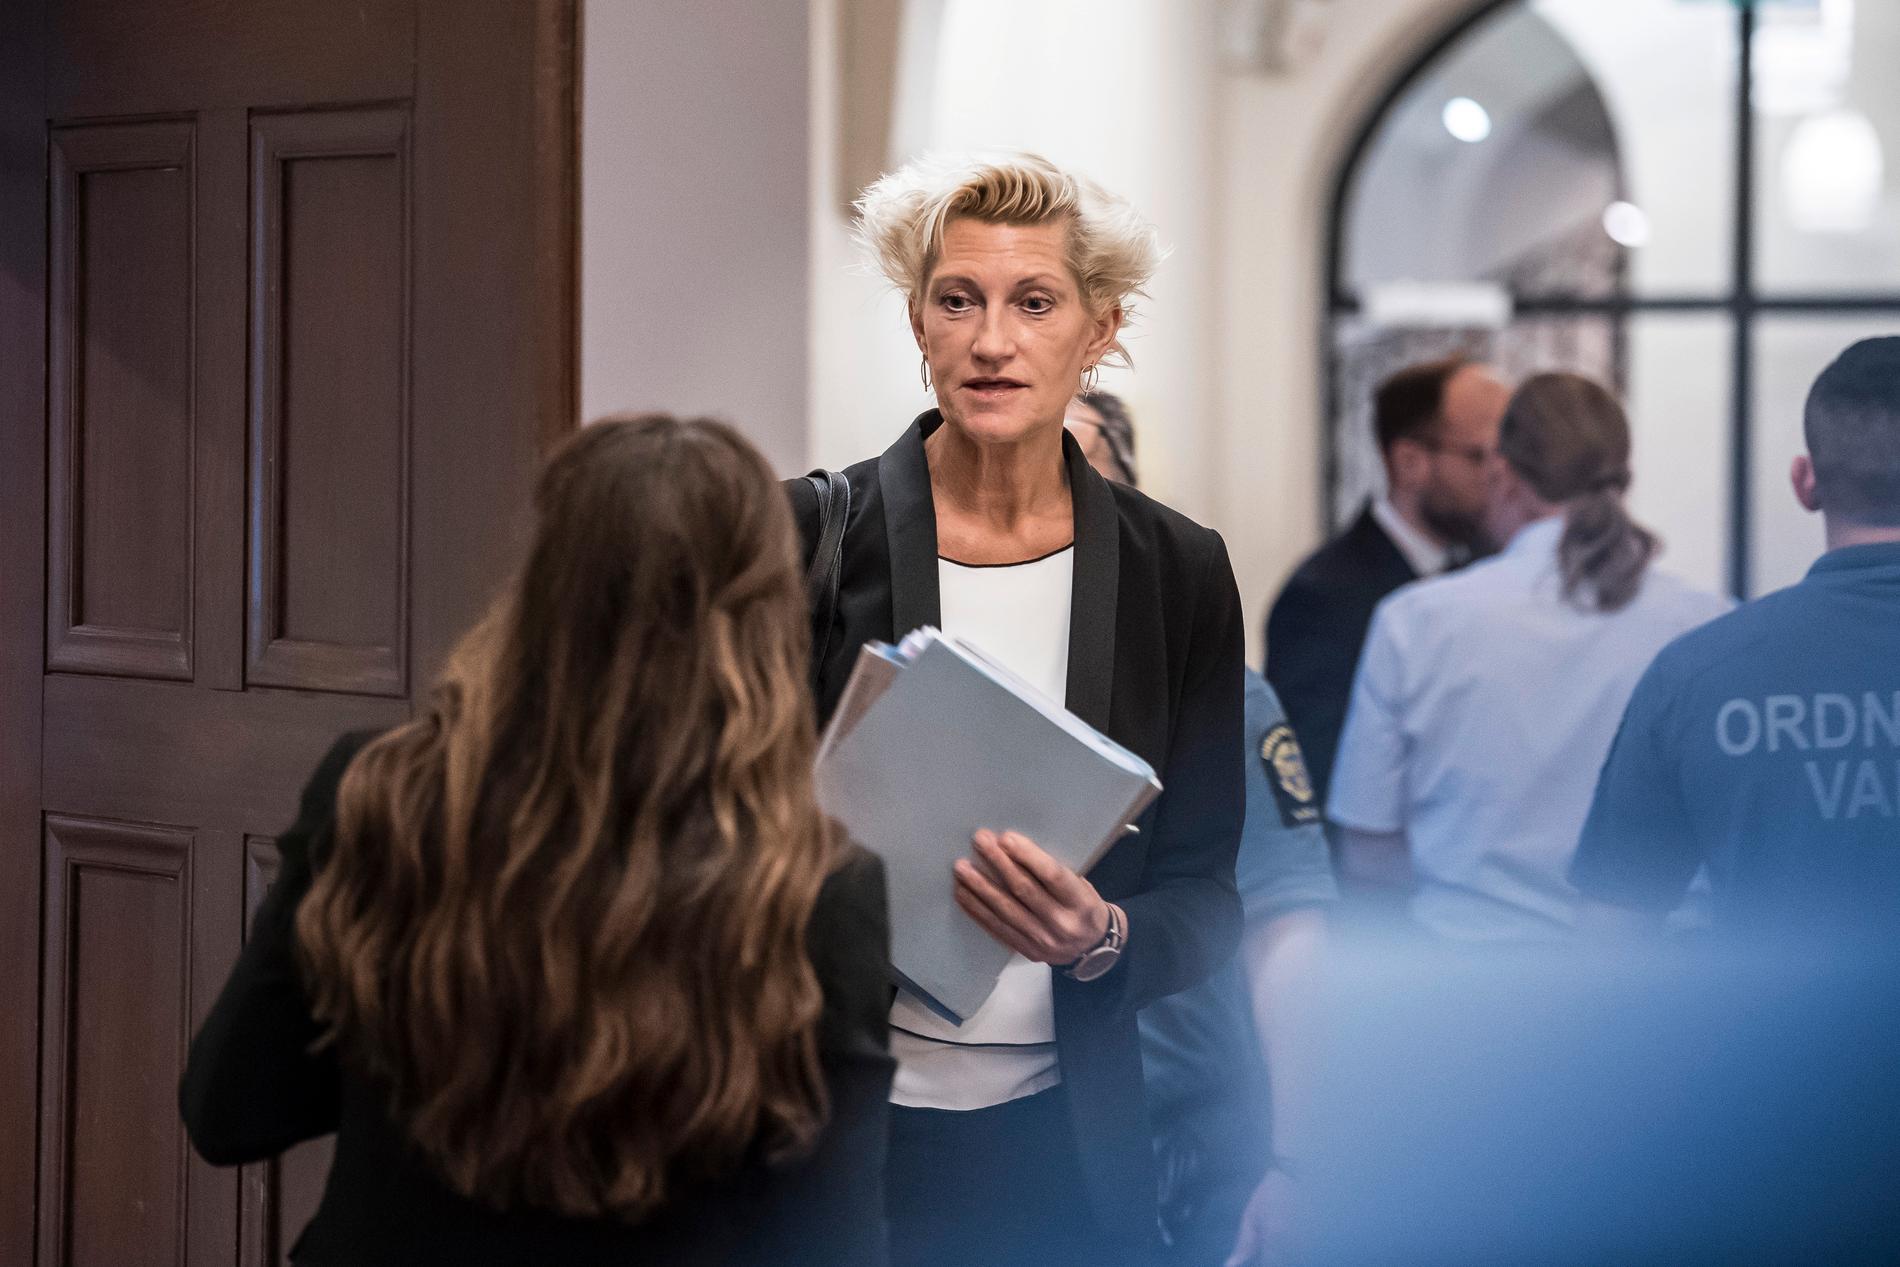 ”Tekniker är på plats och går igenom salongen”, säger Christina Voigt, kammaråklagare vid City åklagarkammare i Stockholm.